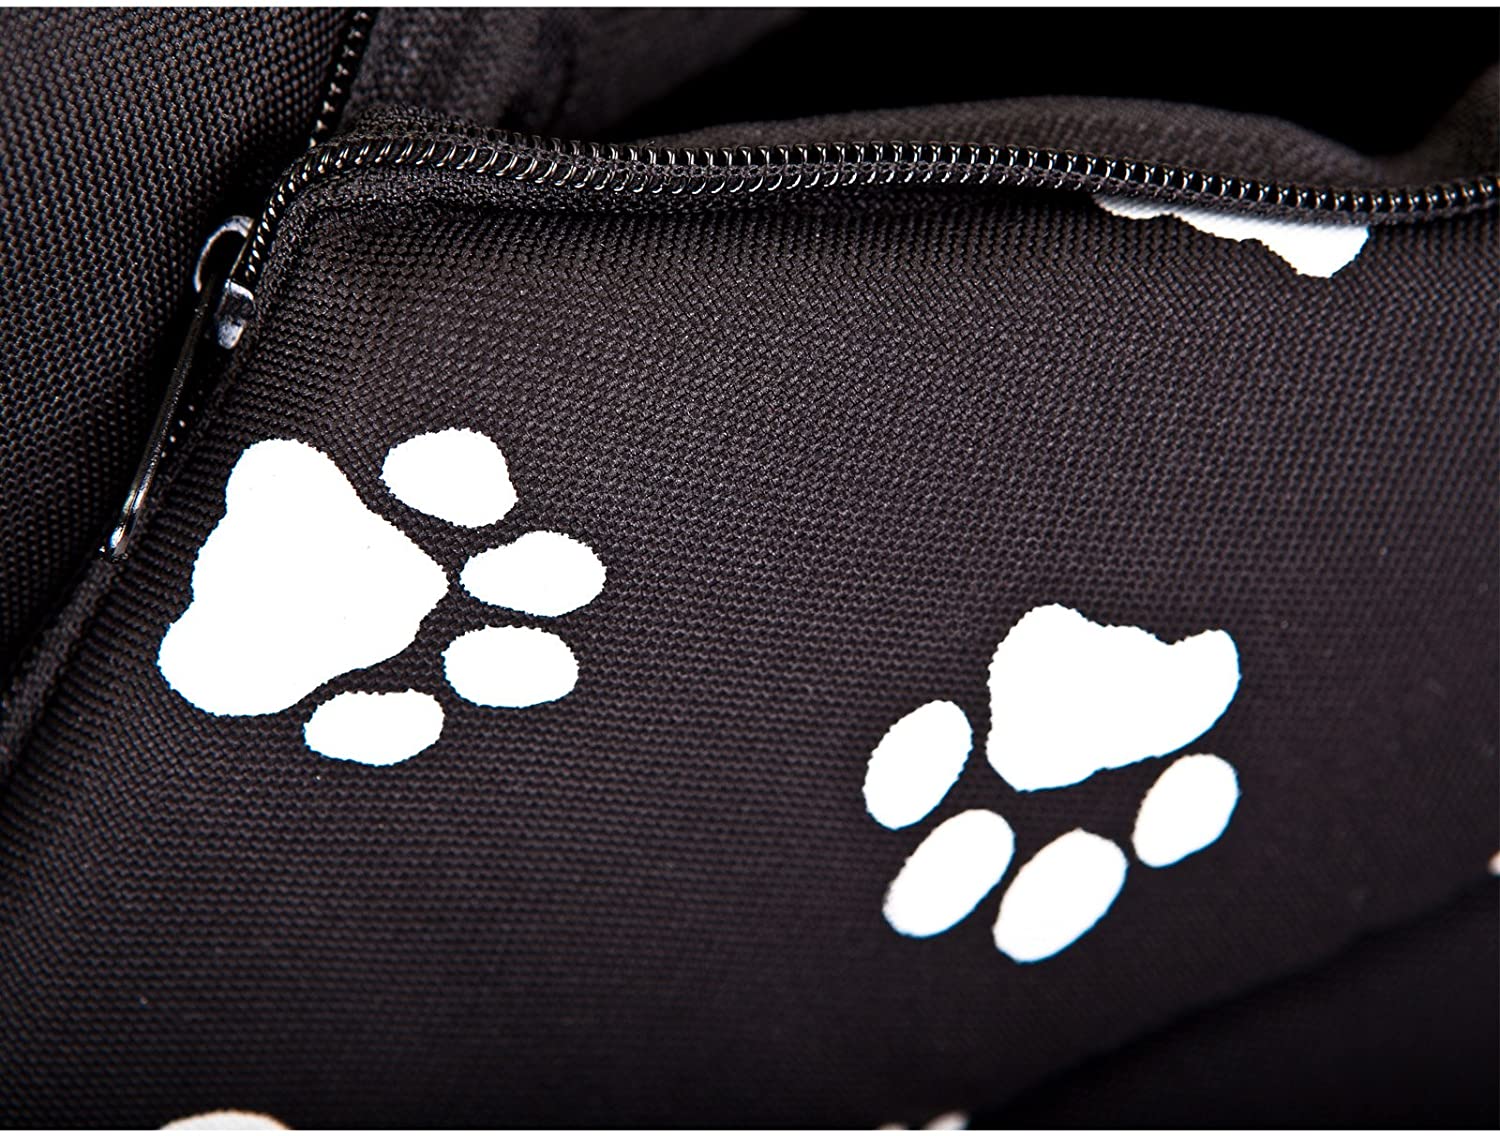  Hobbydog - Caseta para Perro, tamaño 3, Color Negro con Patas. 